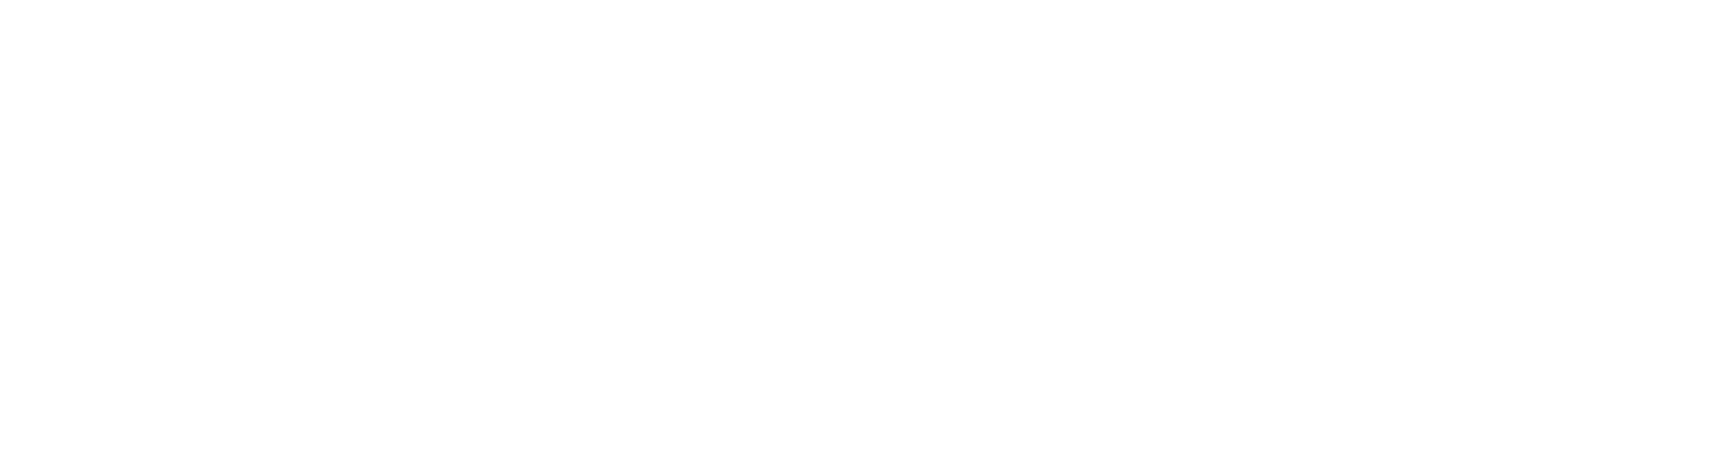 Kepler Gate